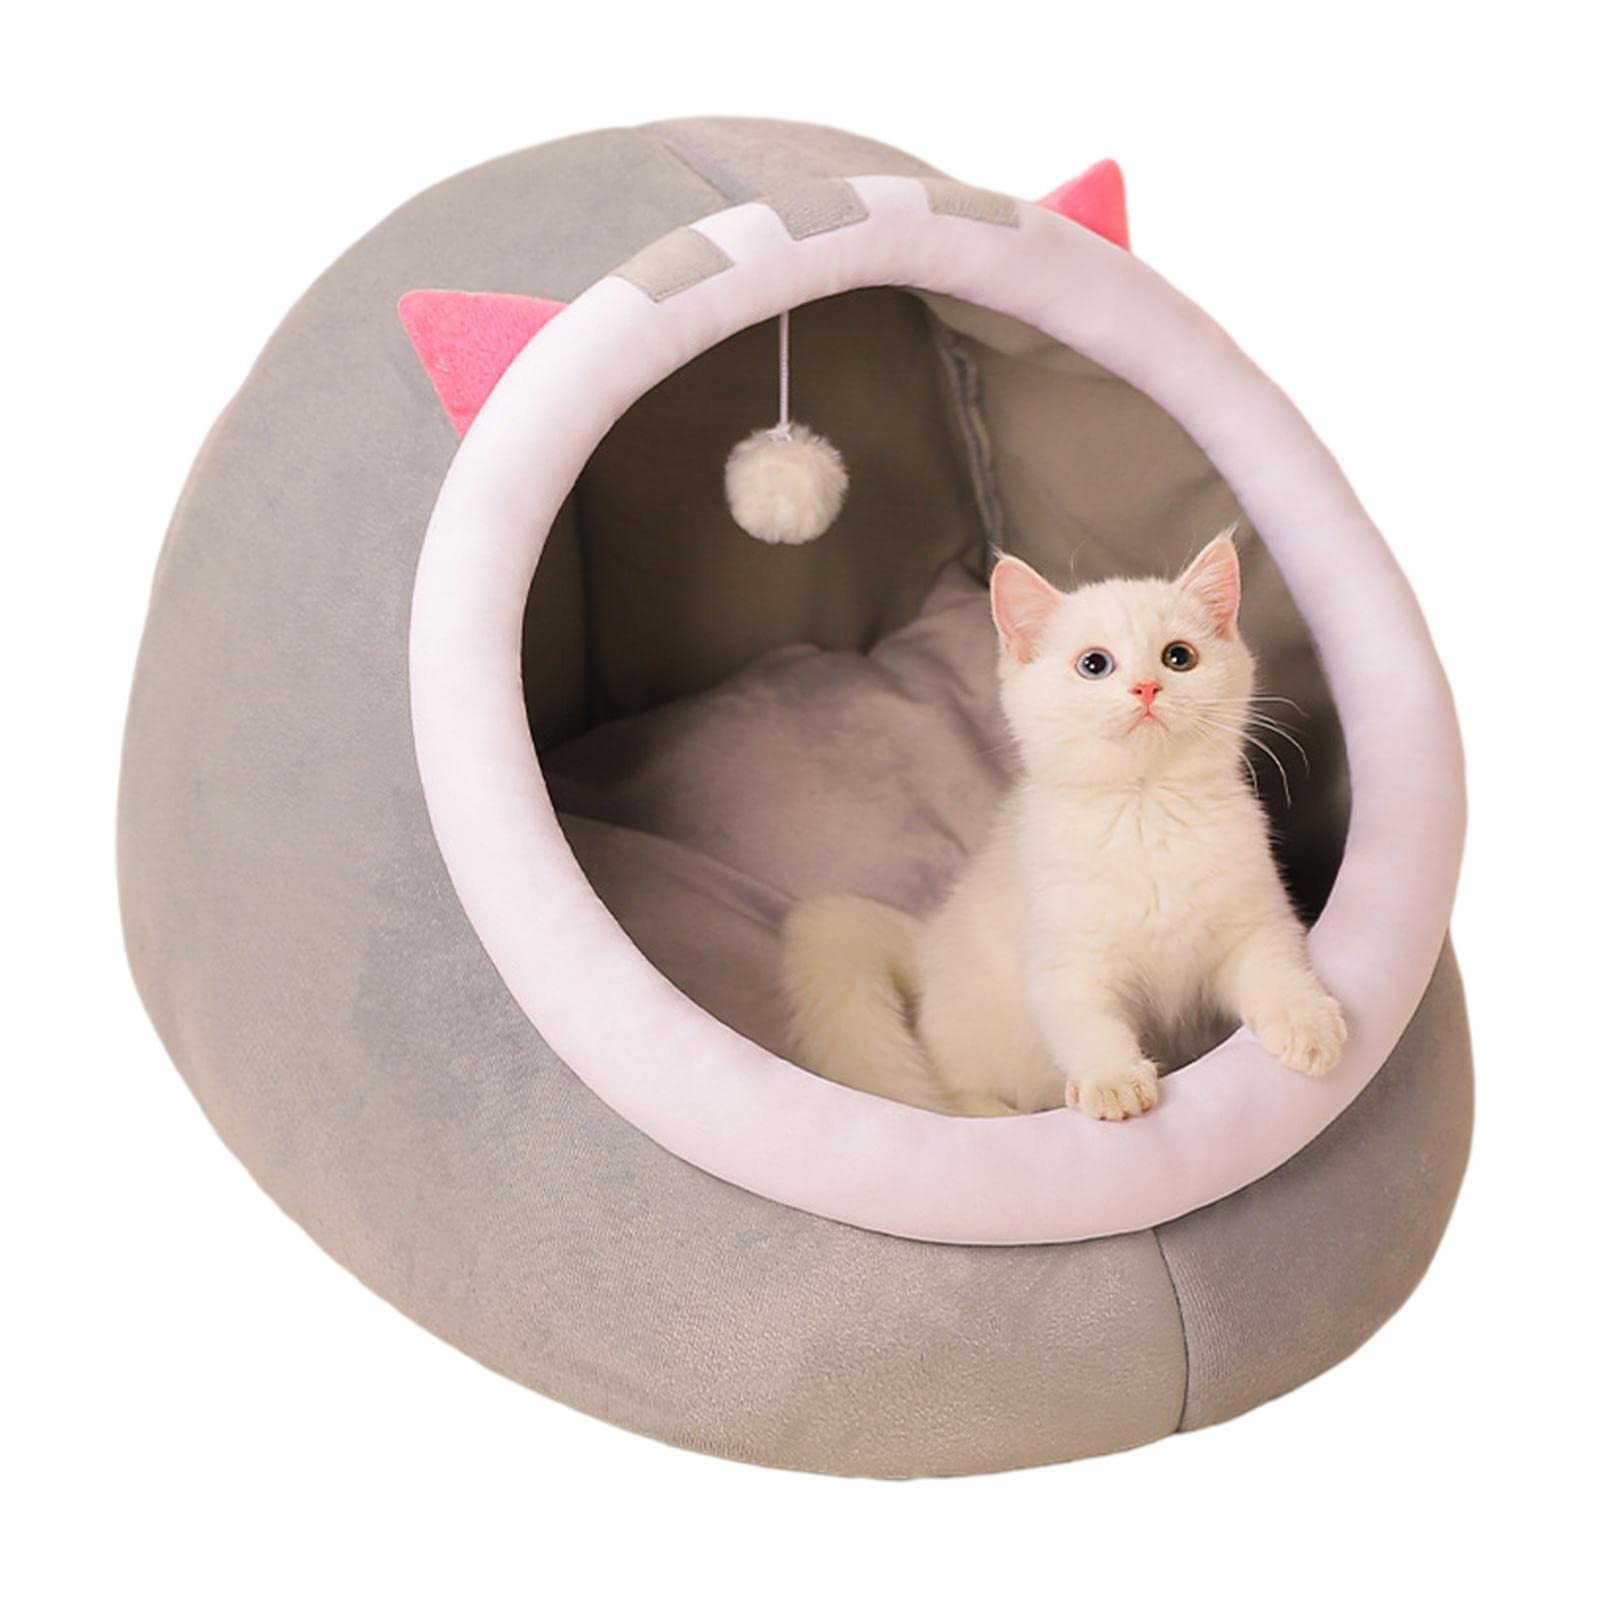 YOUGE Kleines Katzenzelt mit aufgehängtem Spielzeug, Katzenbetten für Indoor-Katzen, waschbares warmes kleines Hundehöhlenbett mit rutschfestem Boden, superweiches beruhigendes Haustier-Schlafsofa